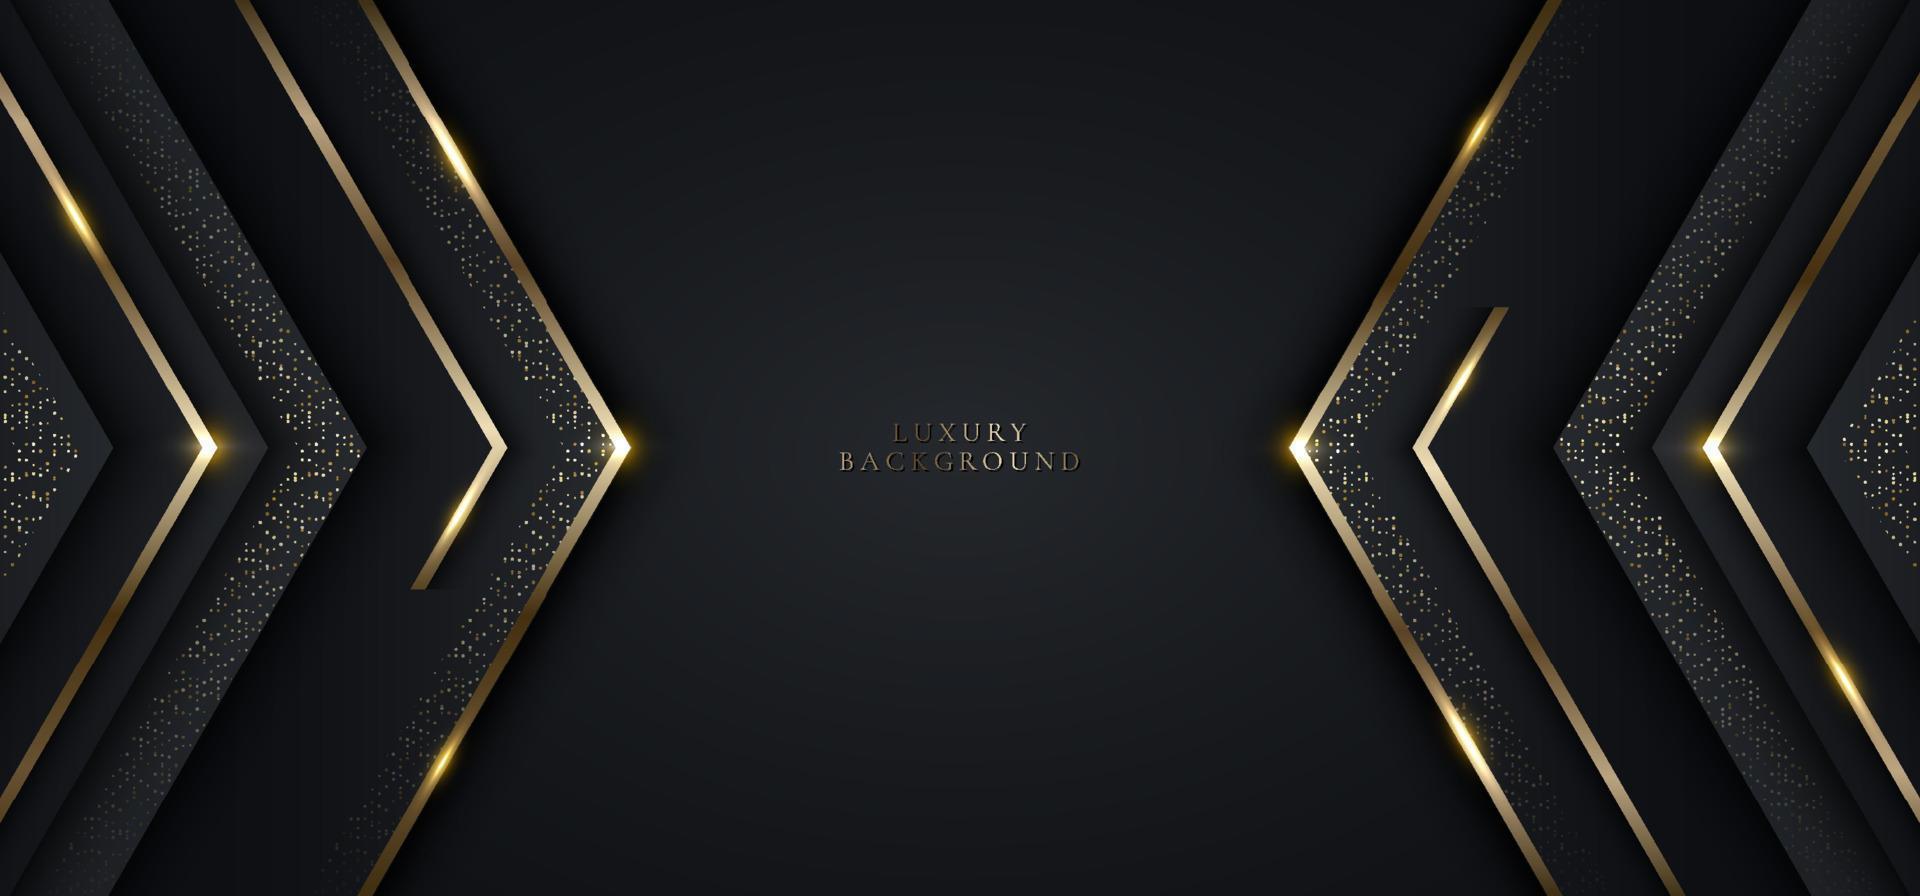 moderne luxe banner sjabloonontwerp zwarte driehoeken en gouden glitter 3d gouden strepen lijn licht vonken op donkere achtergrond vector